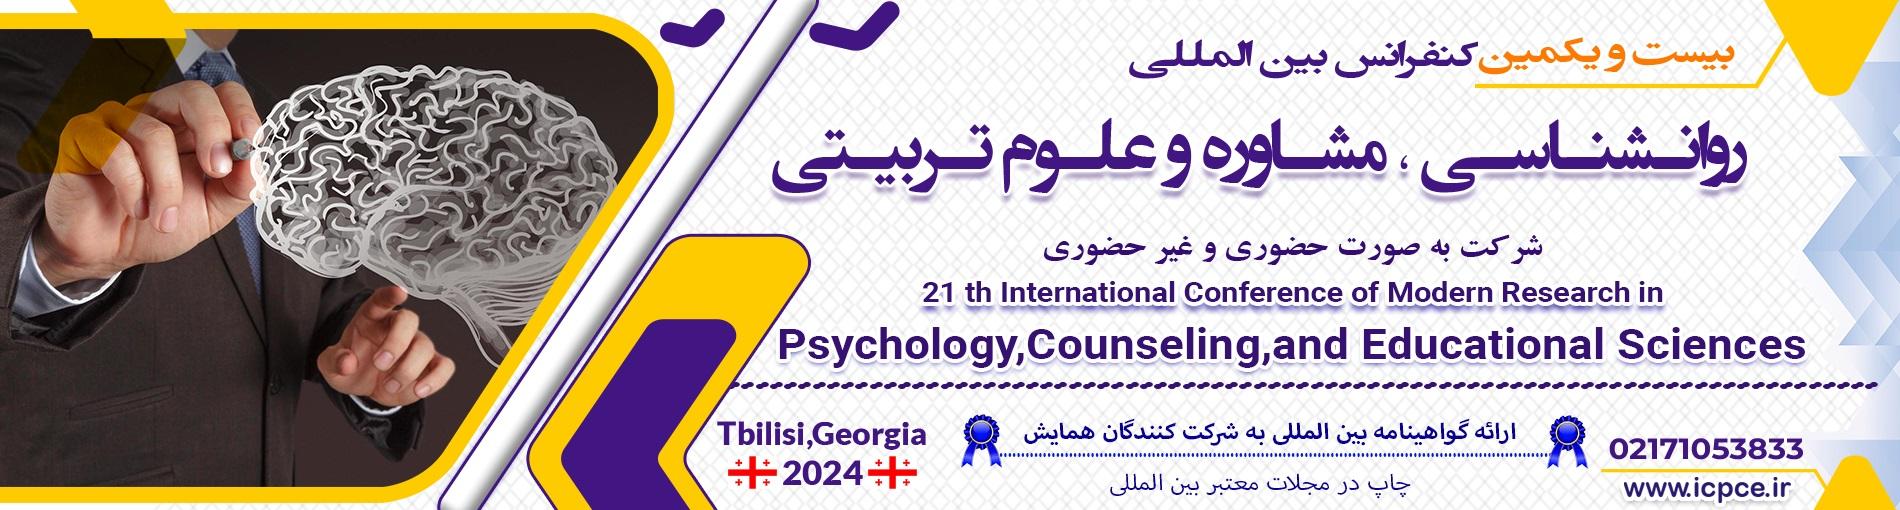 کنفرانس بین المللی روانشناسی،مشاوره و علوم تربیتی